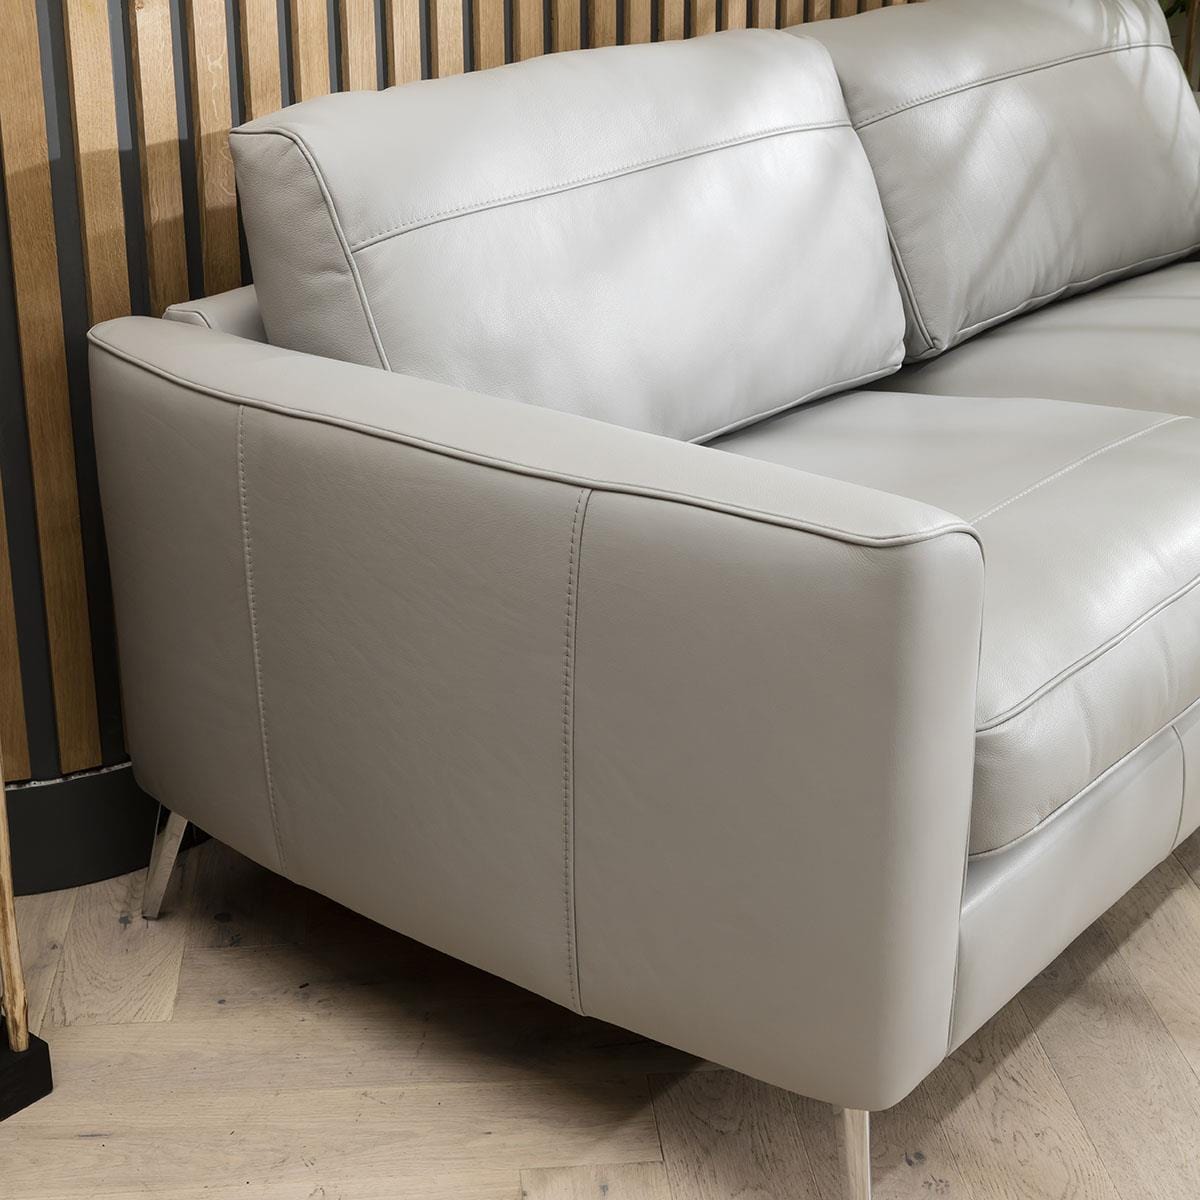 Quatropi Quatropi 3 Seater Premium Leather Modern Sofa - Real Leather Options - 215cm